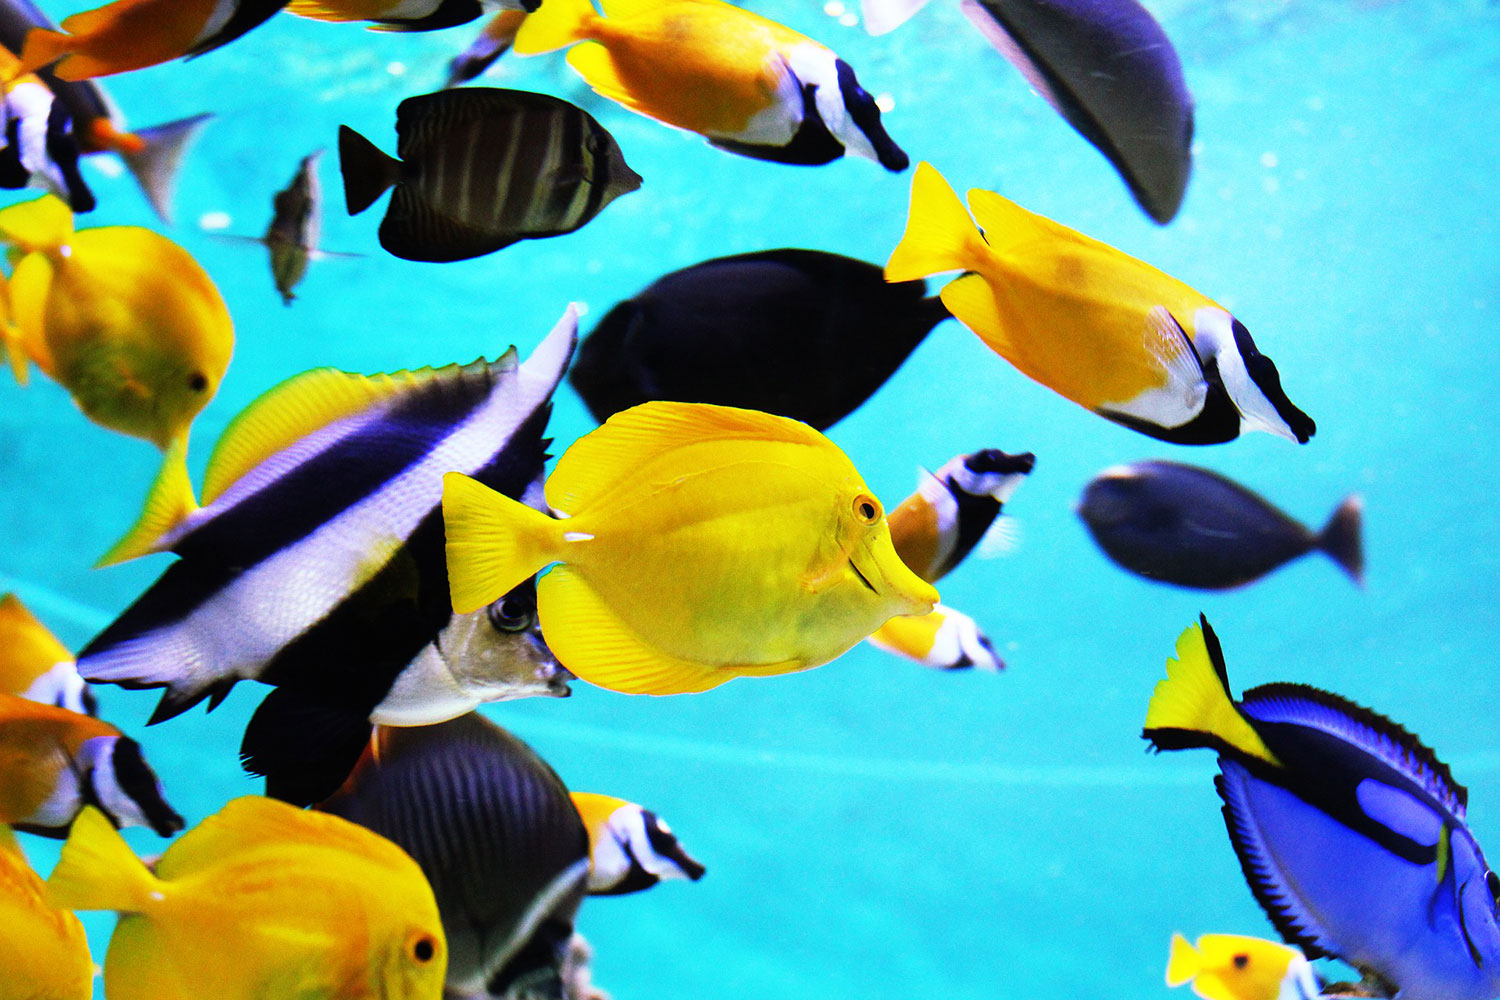 繁殖の基礎知識と繁殖が成功しやすい熱帯魚3種をご紹介 熱帯魚のウロコ